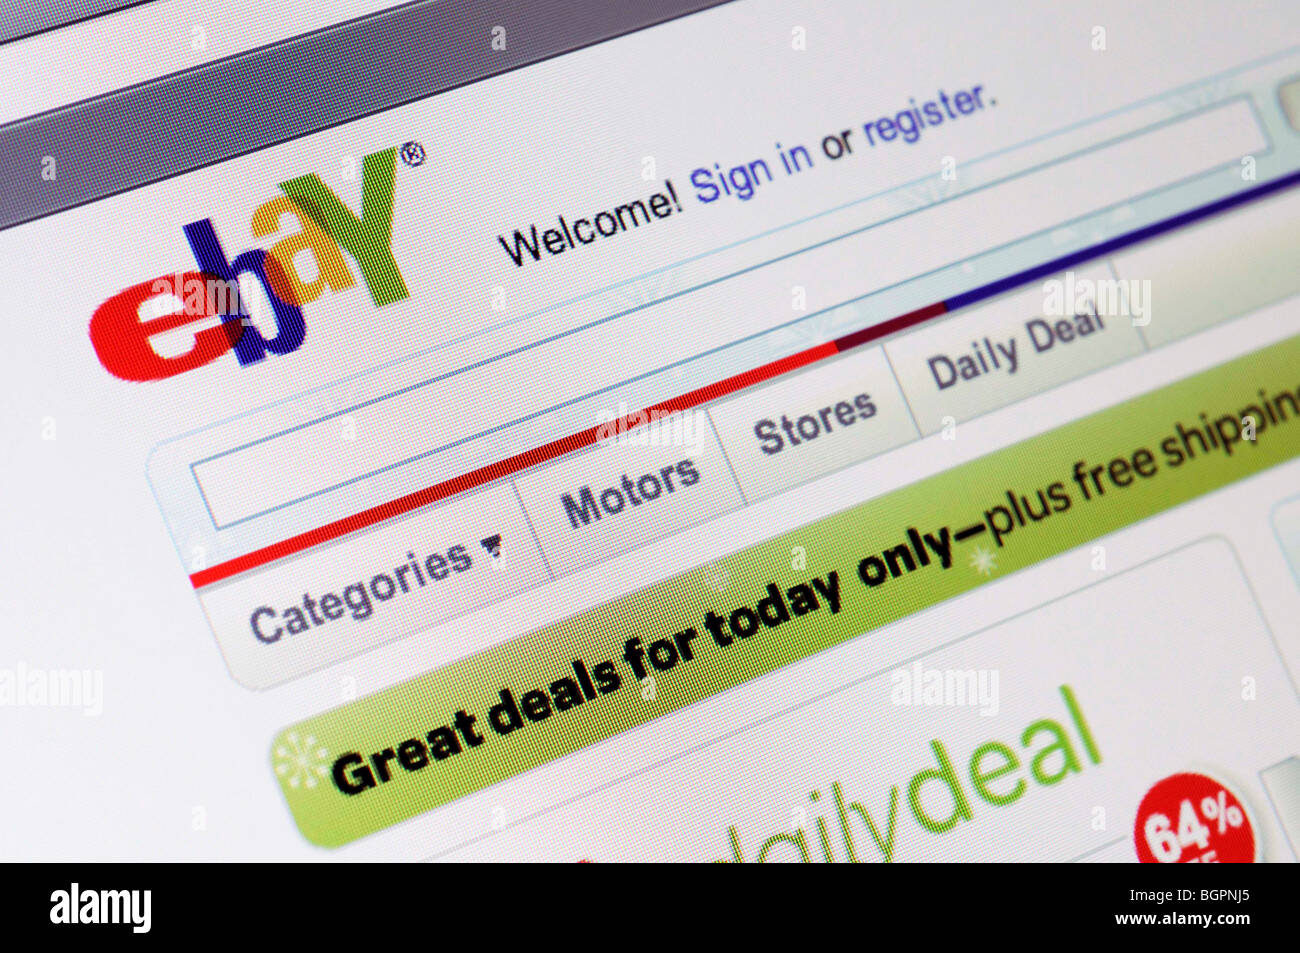 Sitio web de subastas ebay Foto de stock